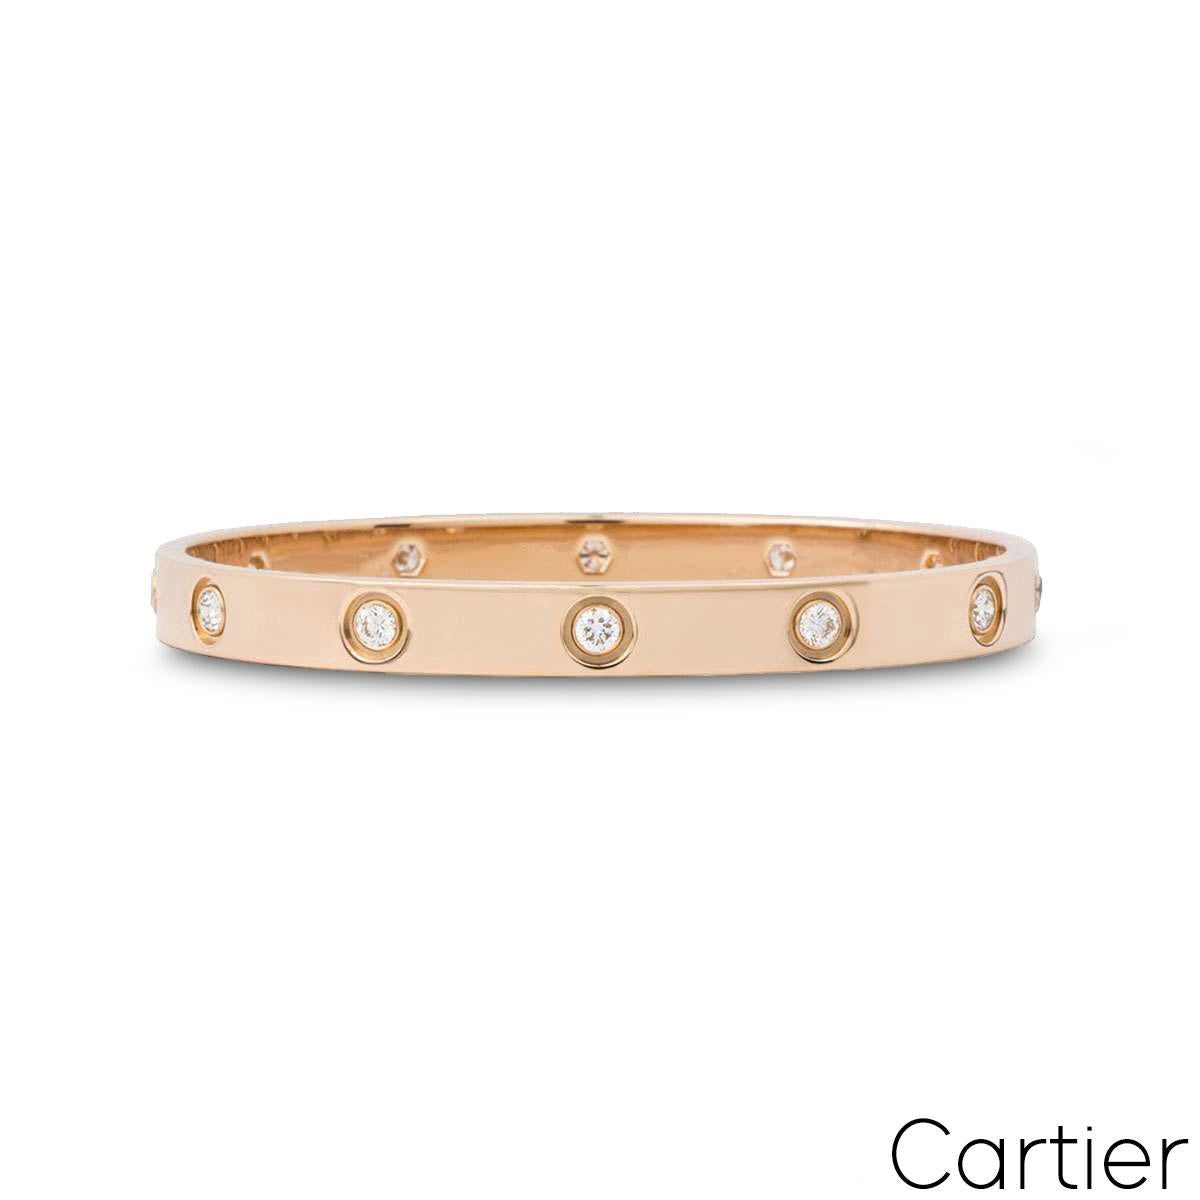 Ein Armband aus 18 Karat Roségold mit Diamanten aus der Love Collection'S von Cartier. Das Armband ist mit 10 runden Diamanten im Brillantschliff besetzt, die am äußeren Rand umlaufen und insgesamt 0,96ct ausmachen. Das Armband hat die Größe 18, ist